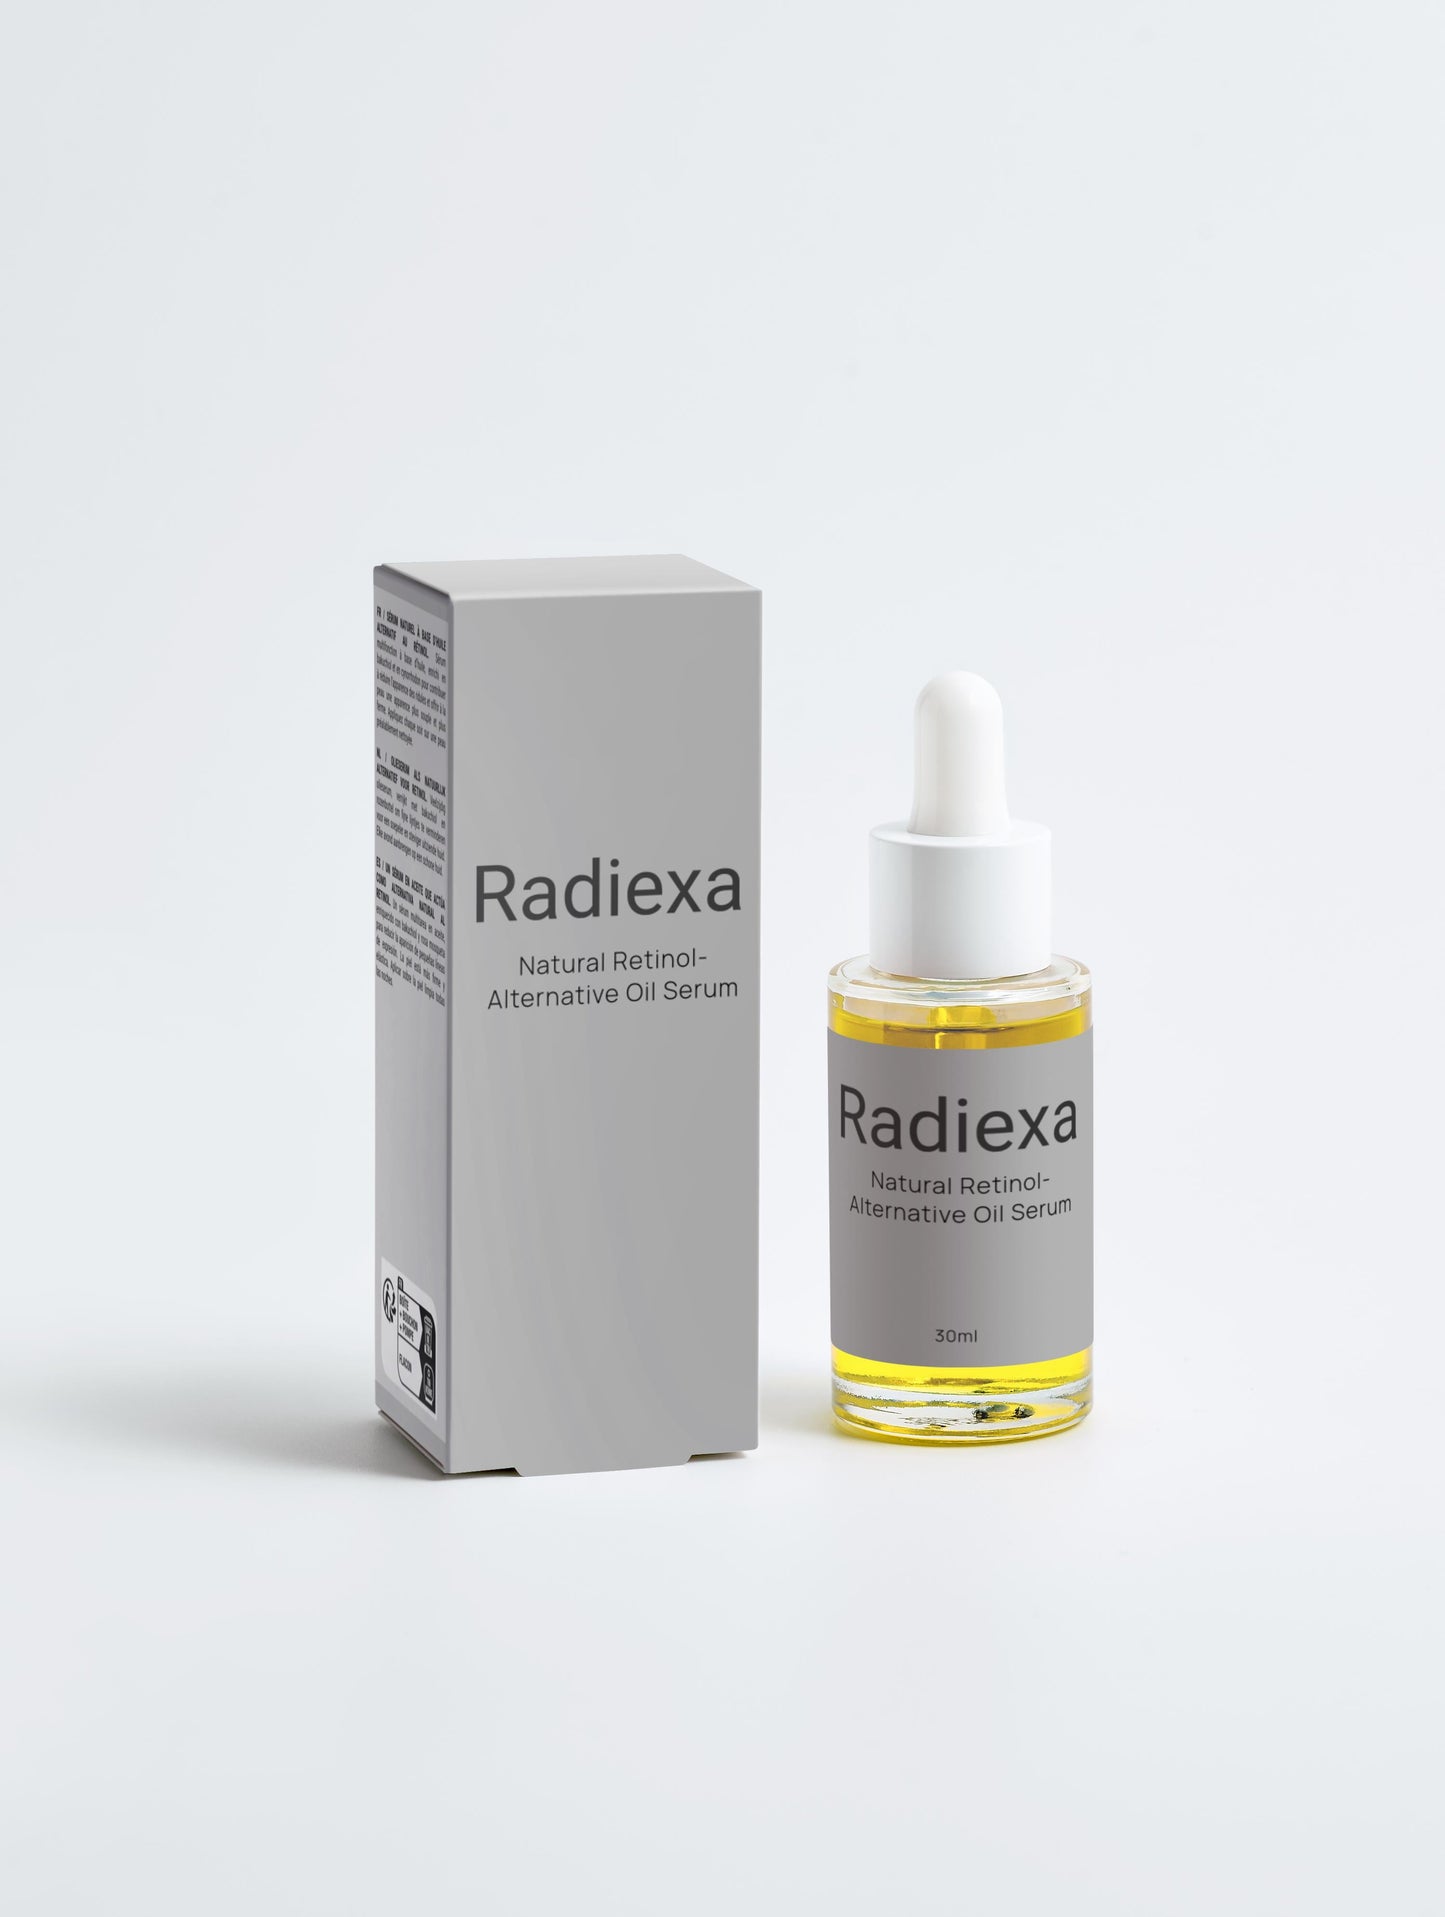 Natural Retinol-Alternative Oil Serum - Radiexa6428